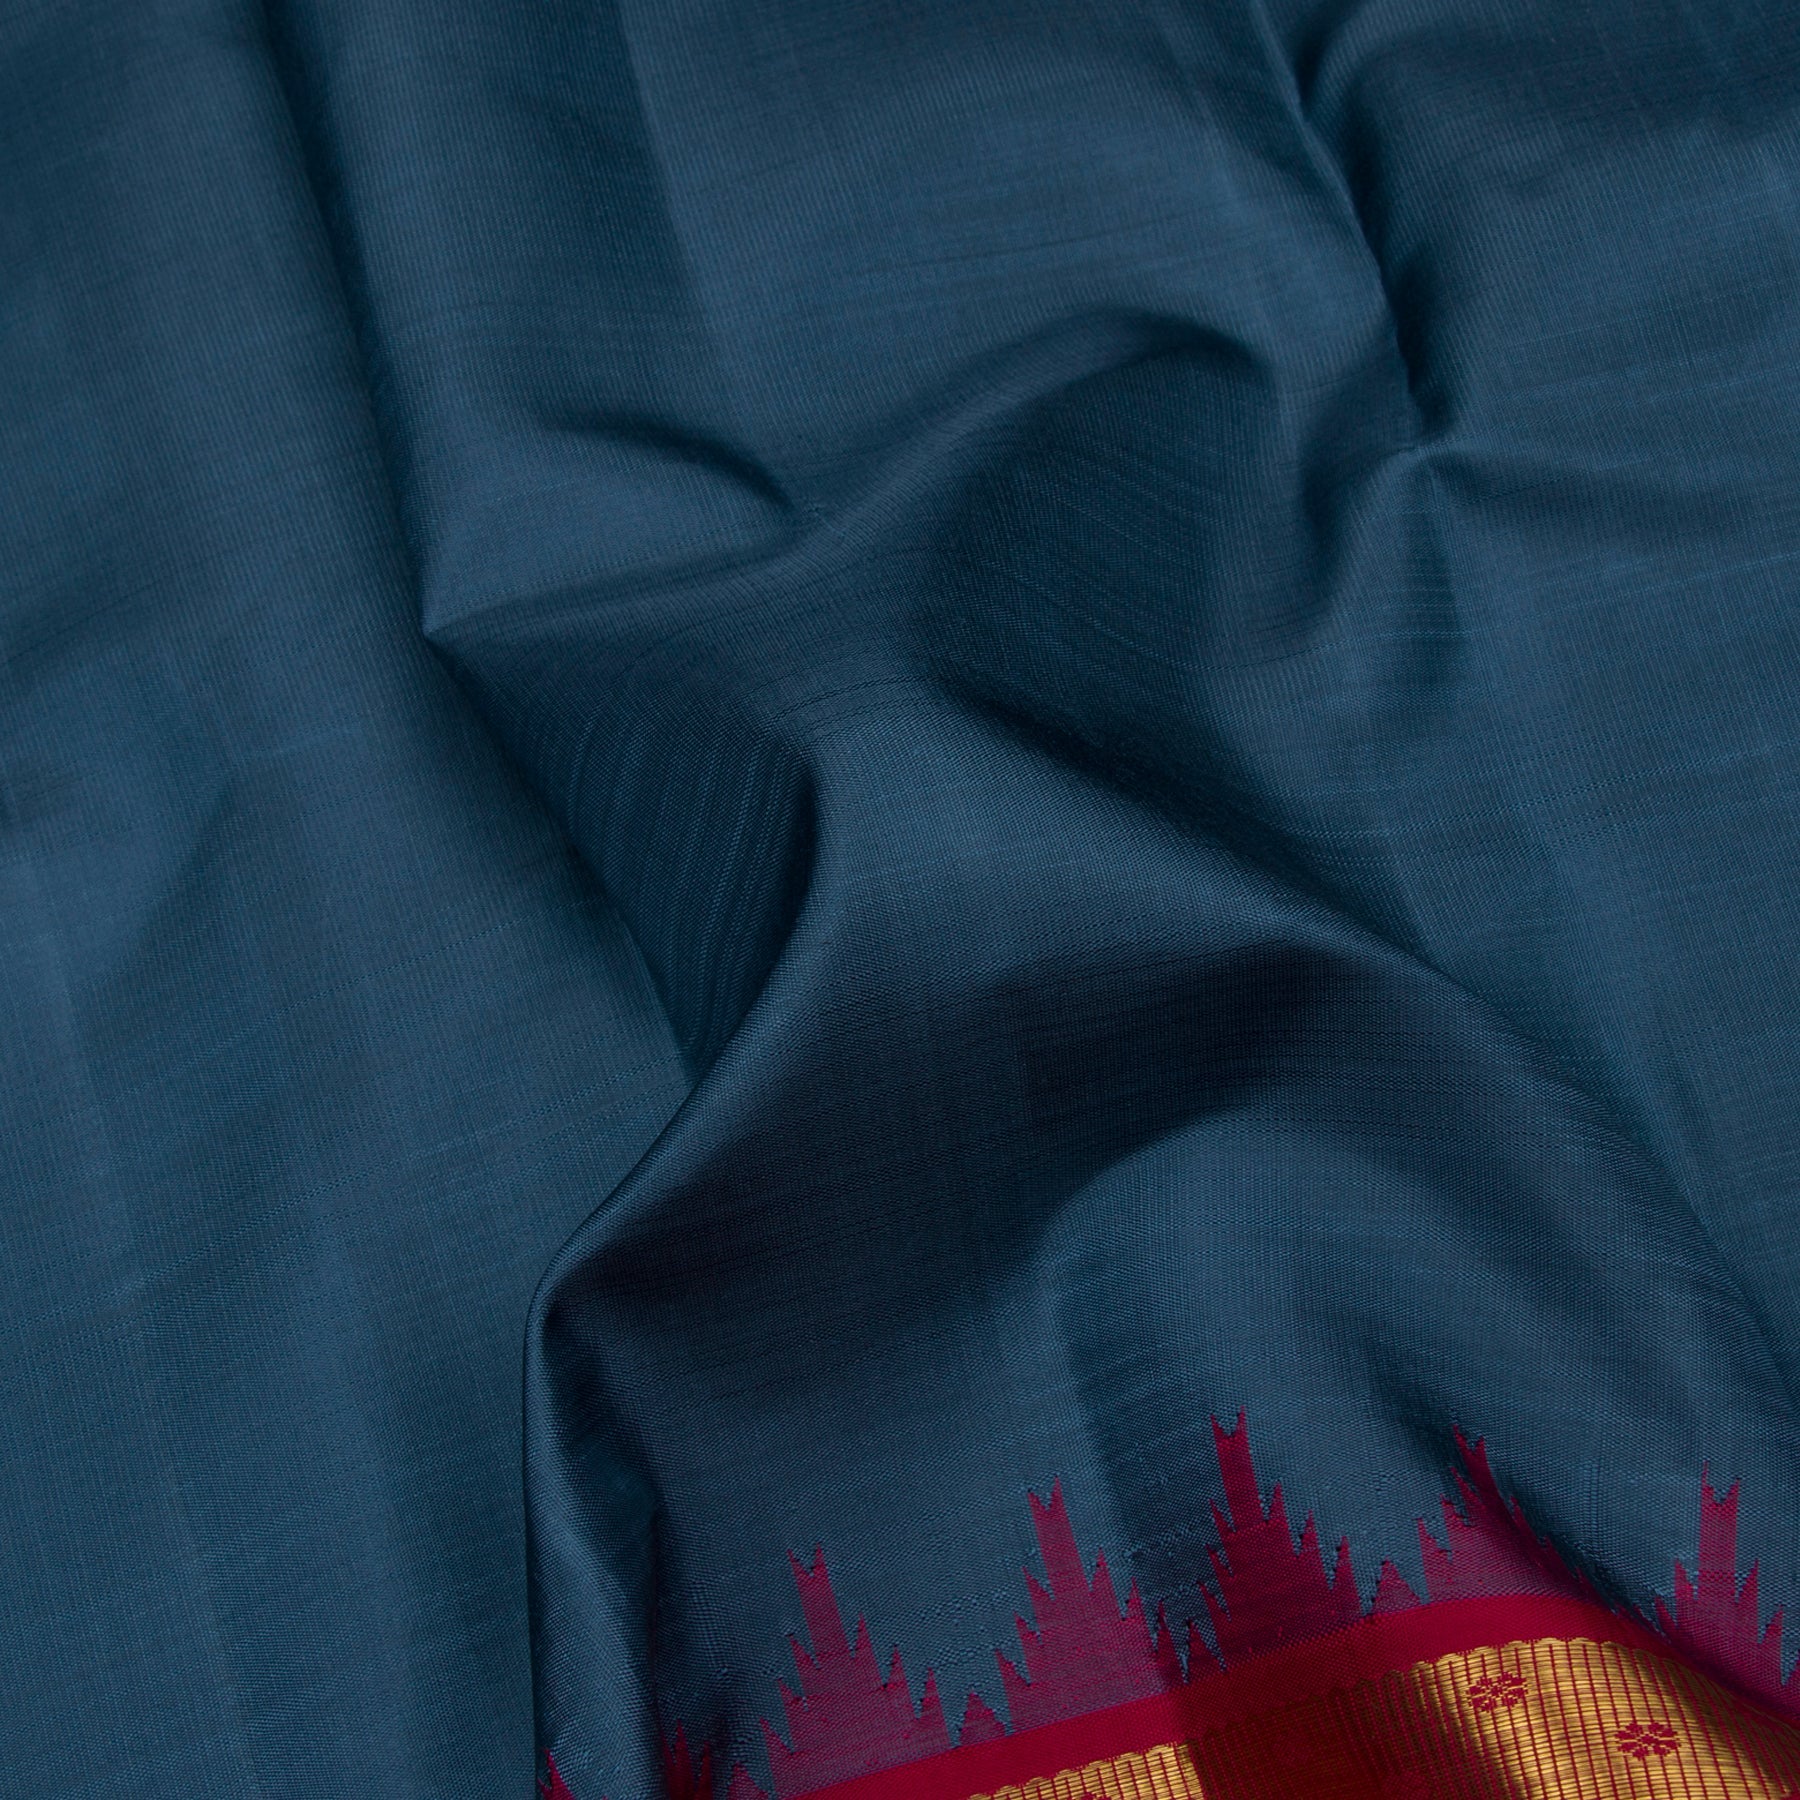 Kanakavalli Kanjivaram Silk Sari 23-595-HS001-10690 - Fabric View